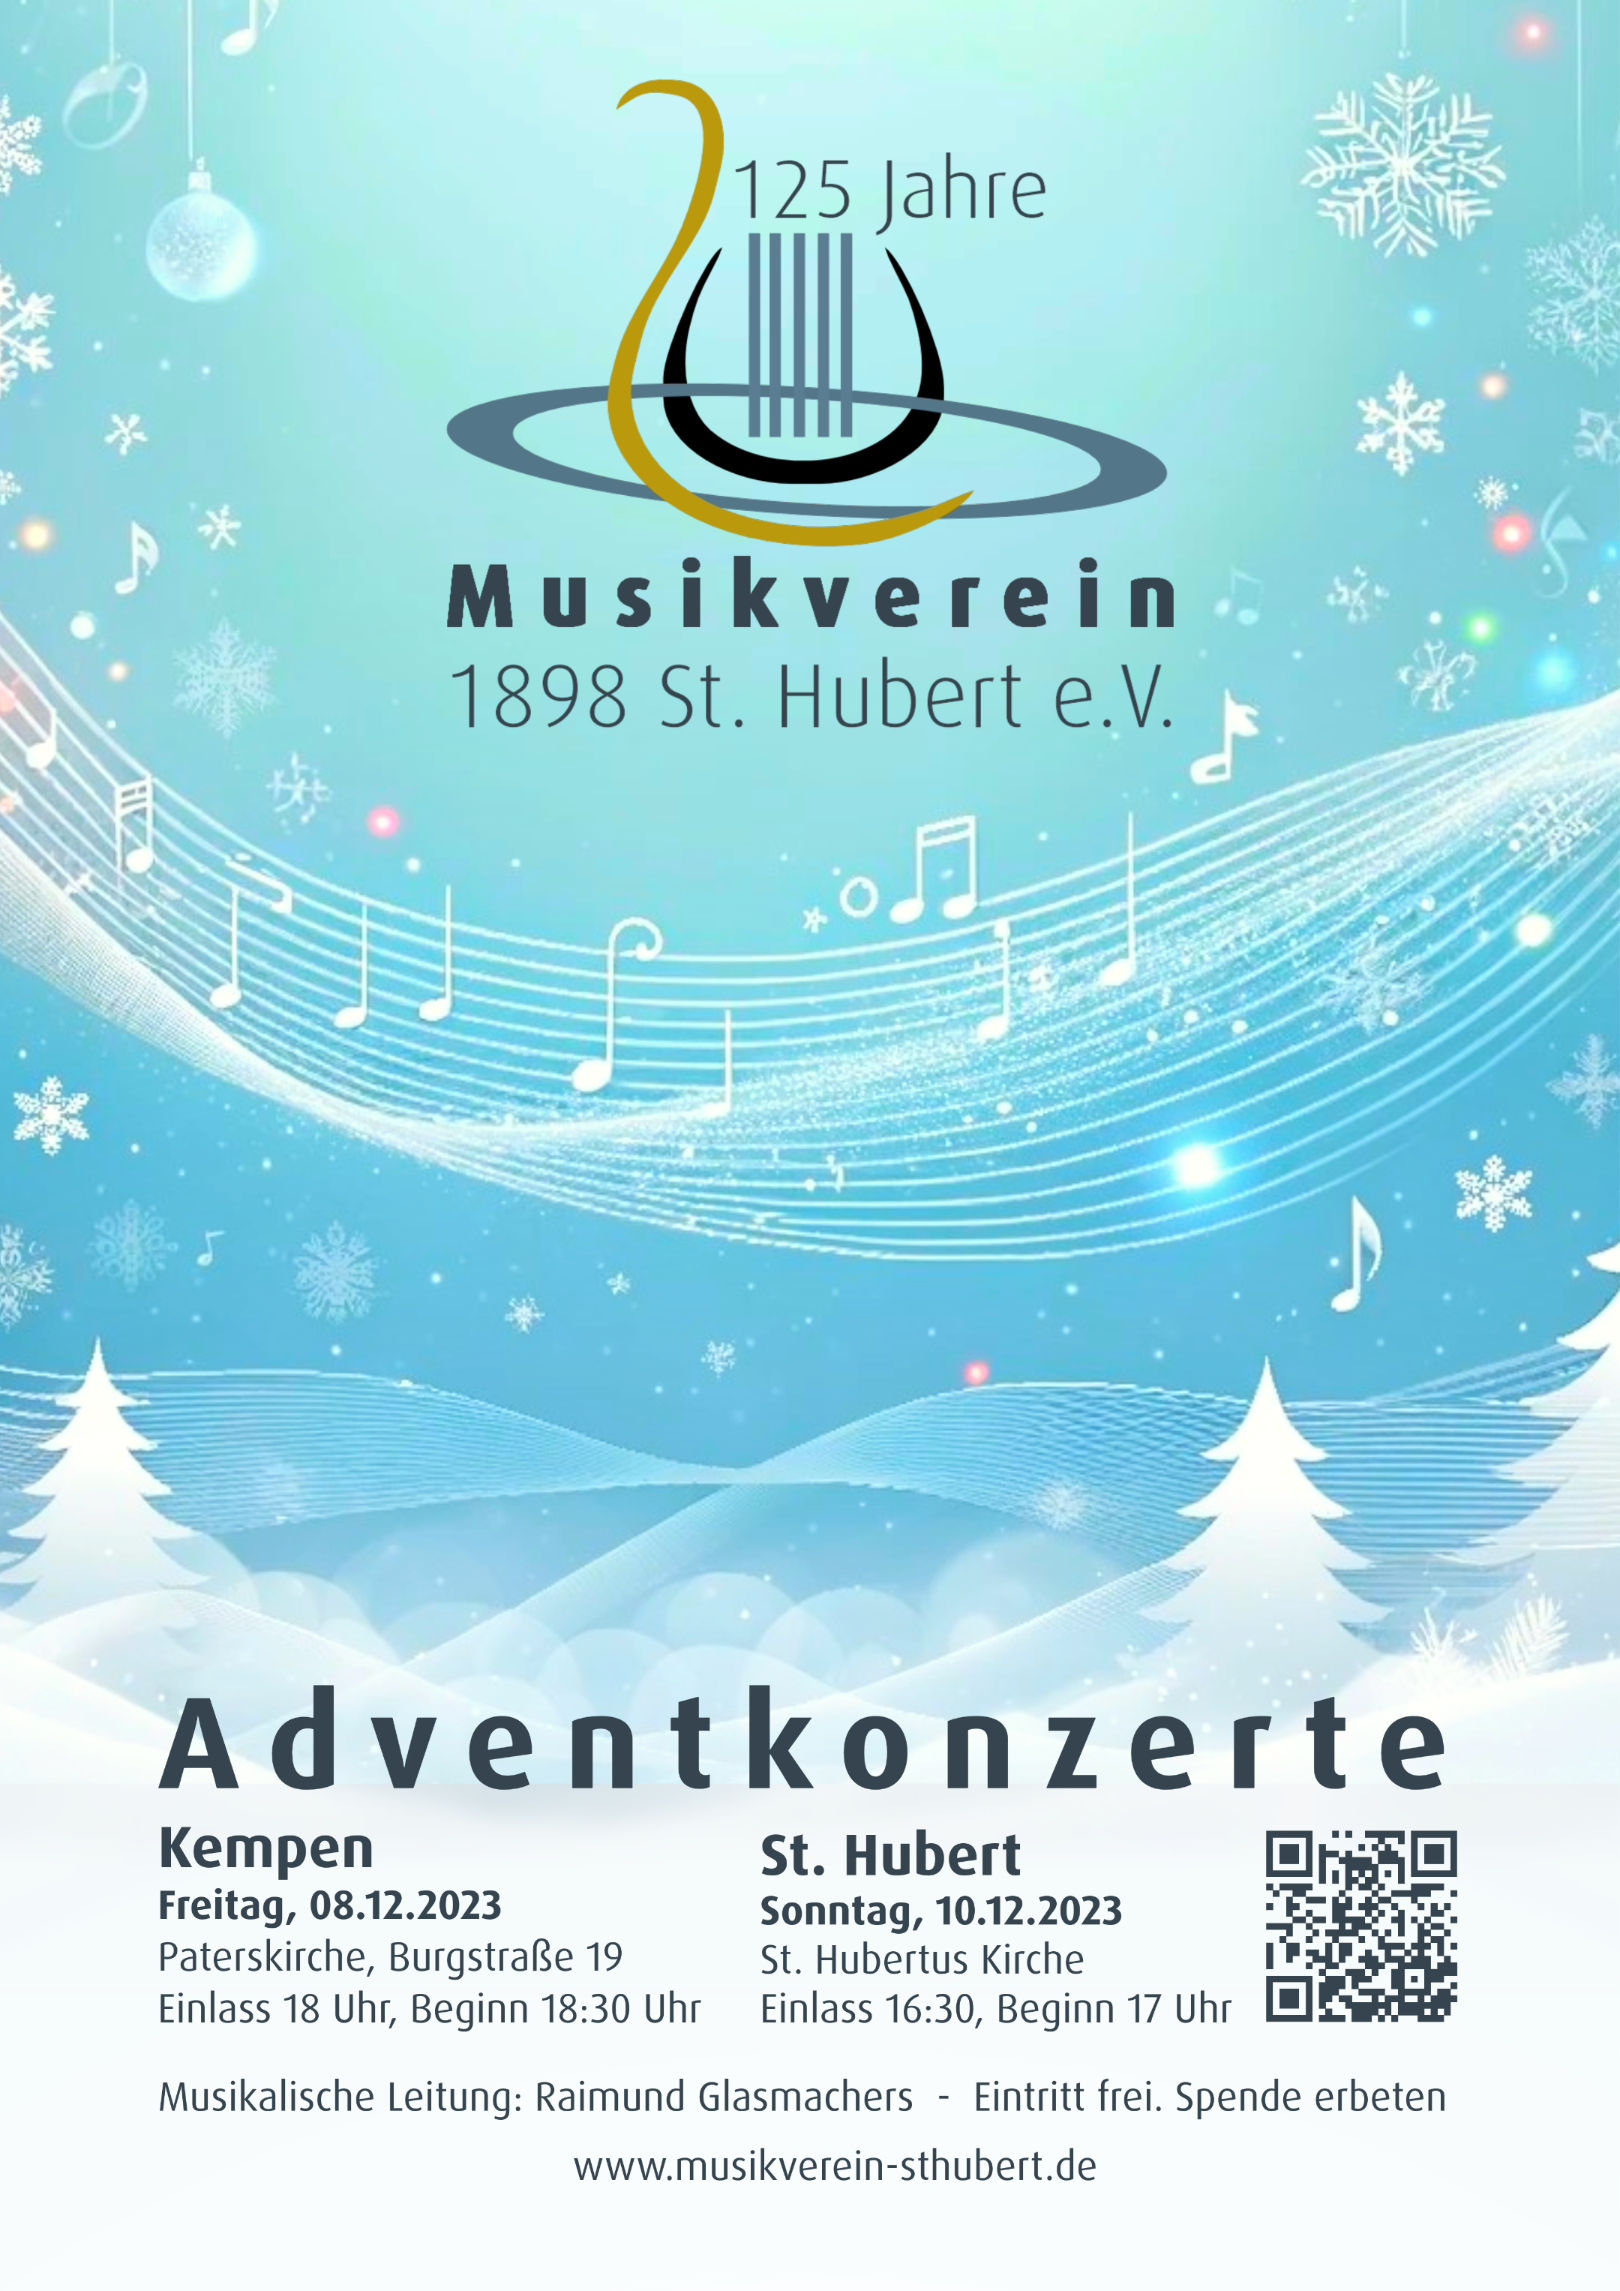 Musikverein Adventkonzert 2023 plakat (c) Musikverein St. Hubert